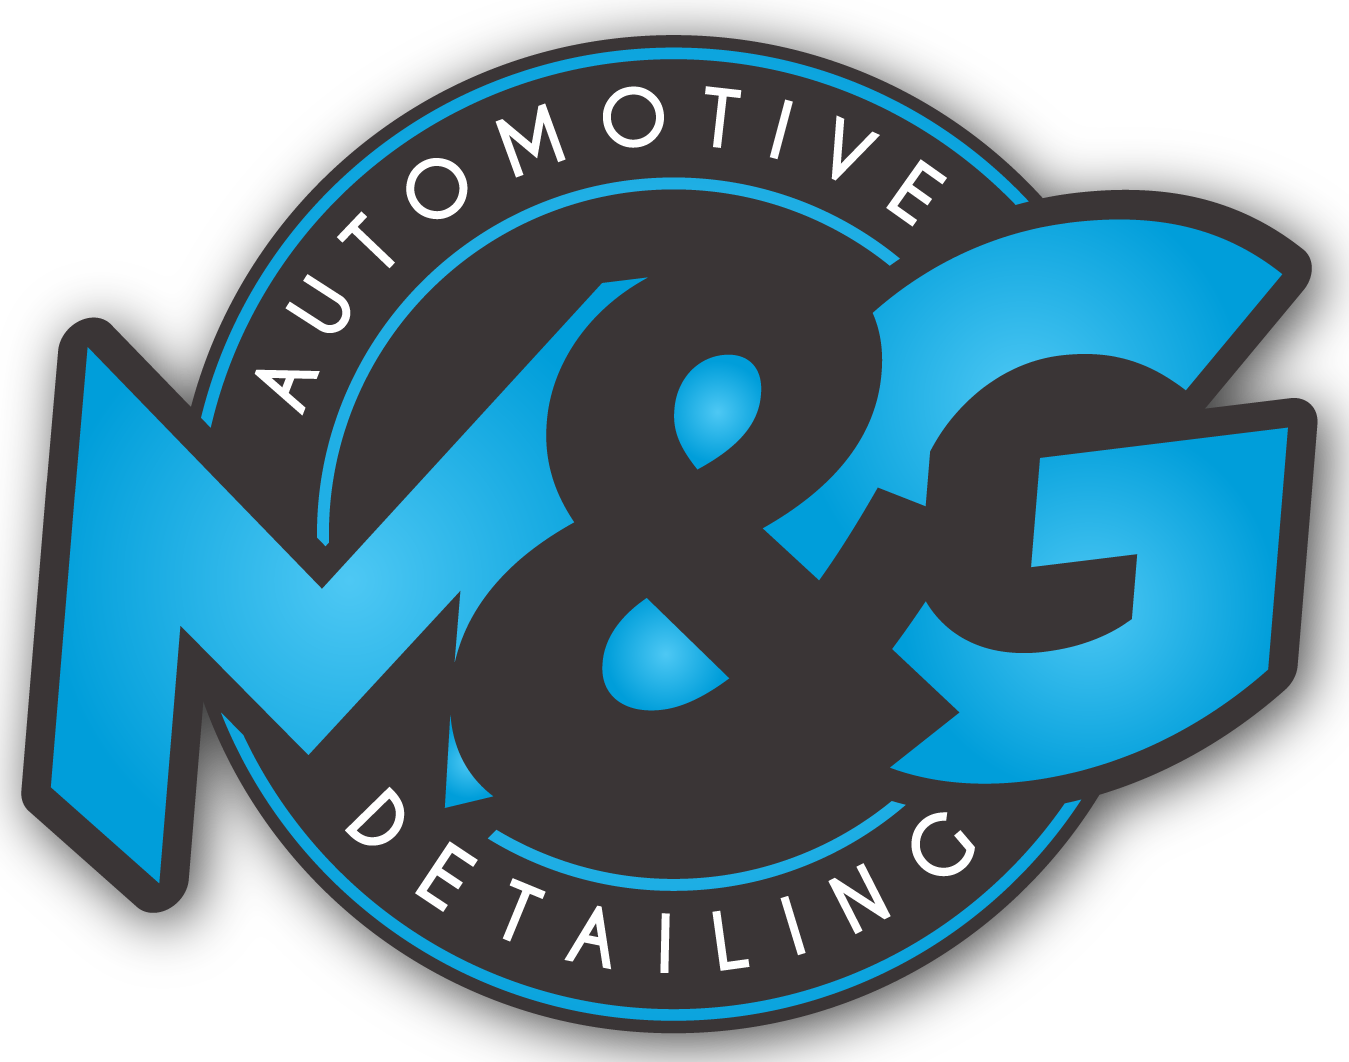 M&G Automotive Detailing